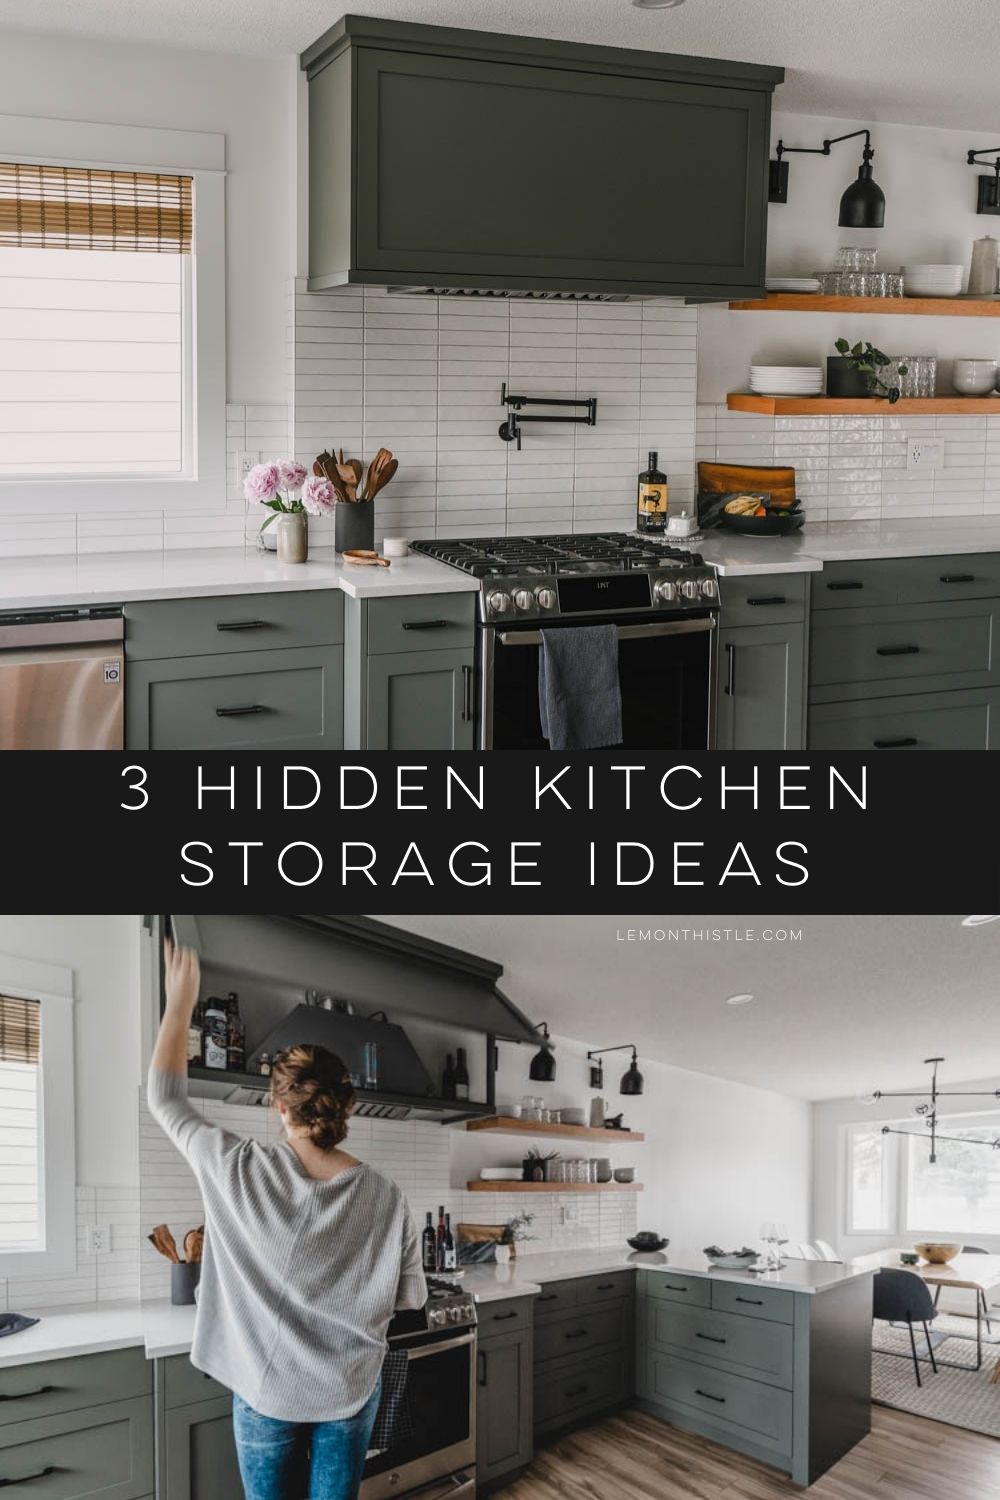 Hidden storage in the kitchen